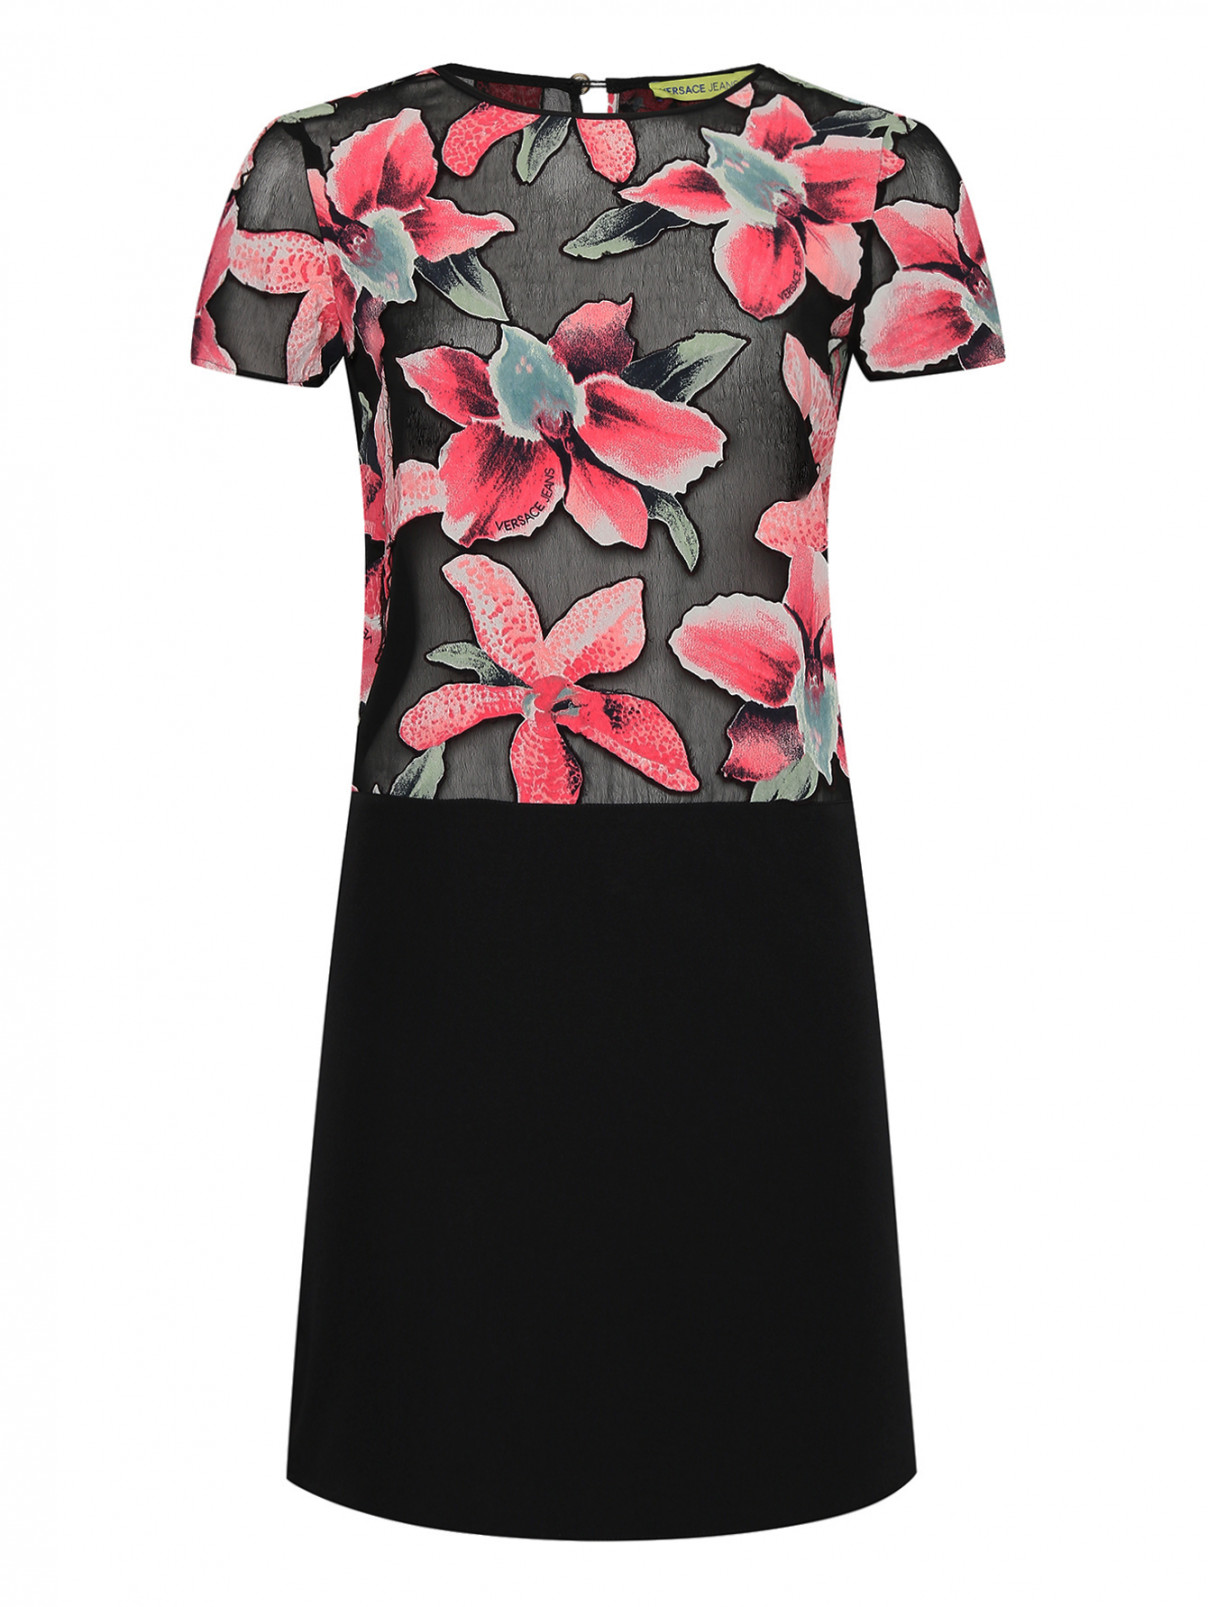 Комбинированное платье с аппликацией Versace Jeans  –  Общий вид  – Цвет:  Черный